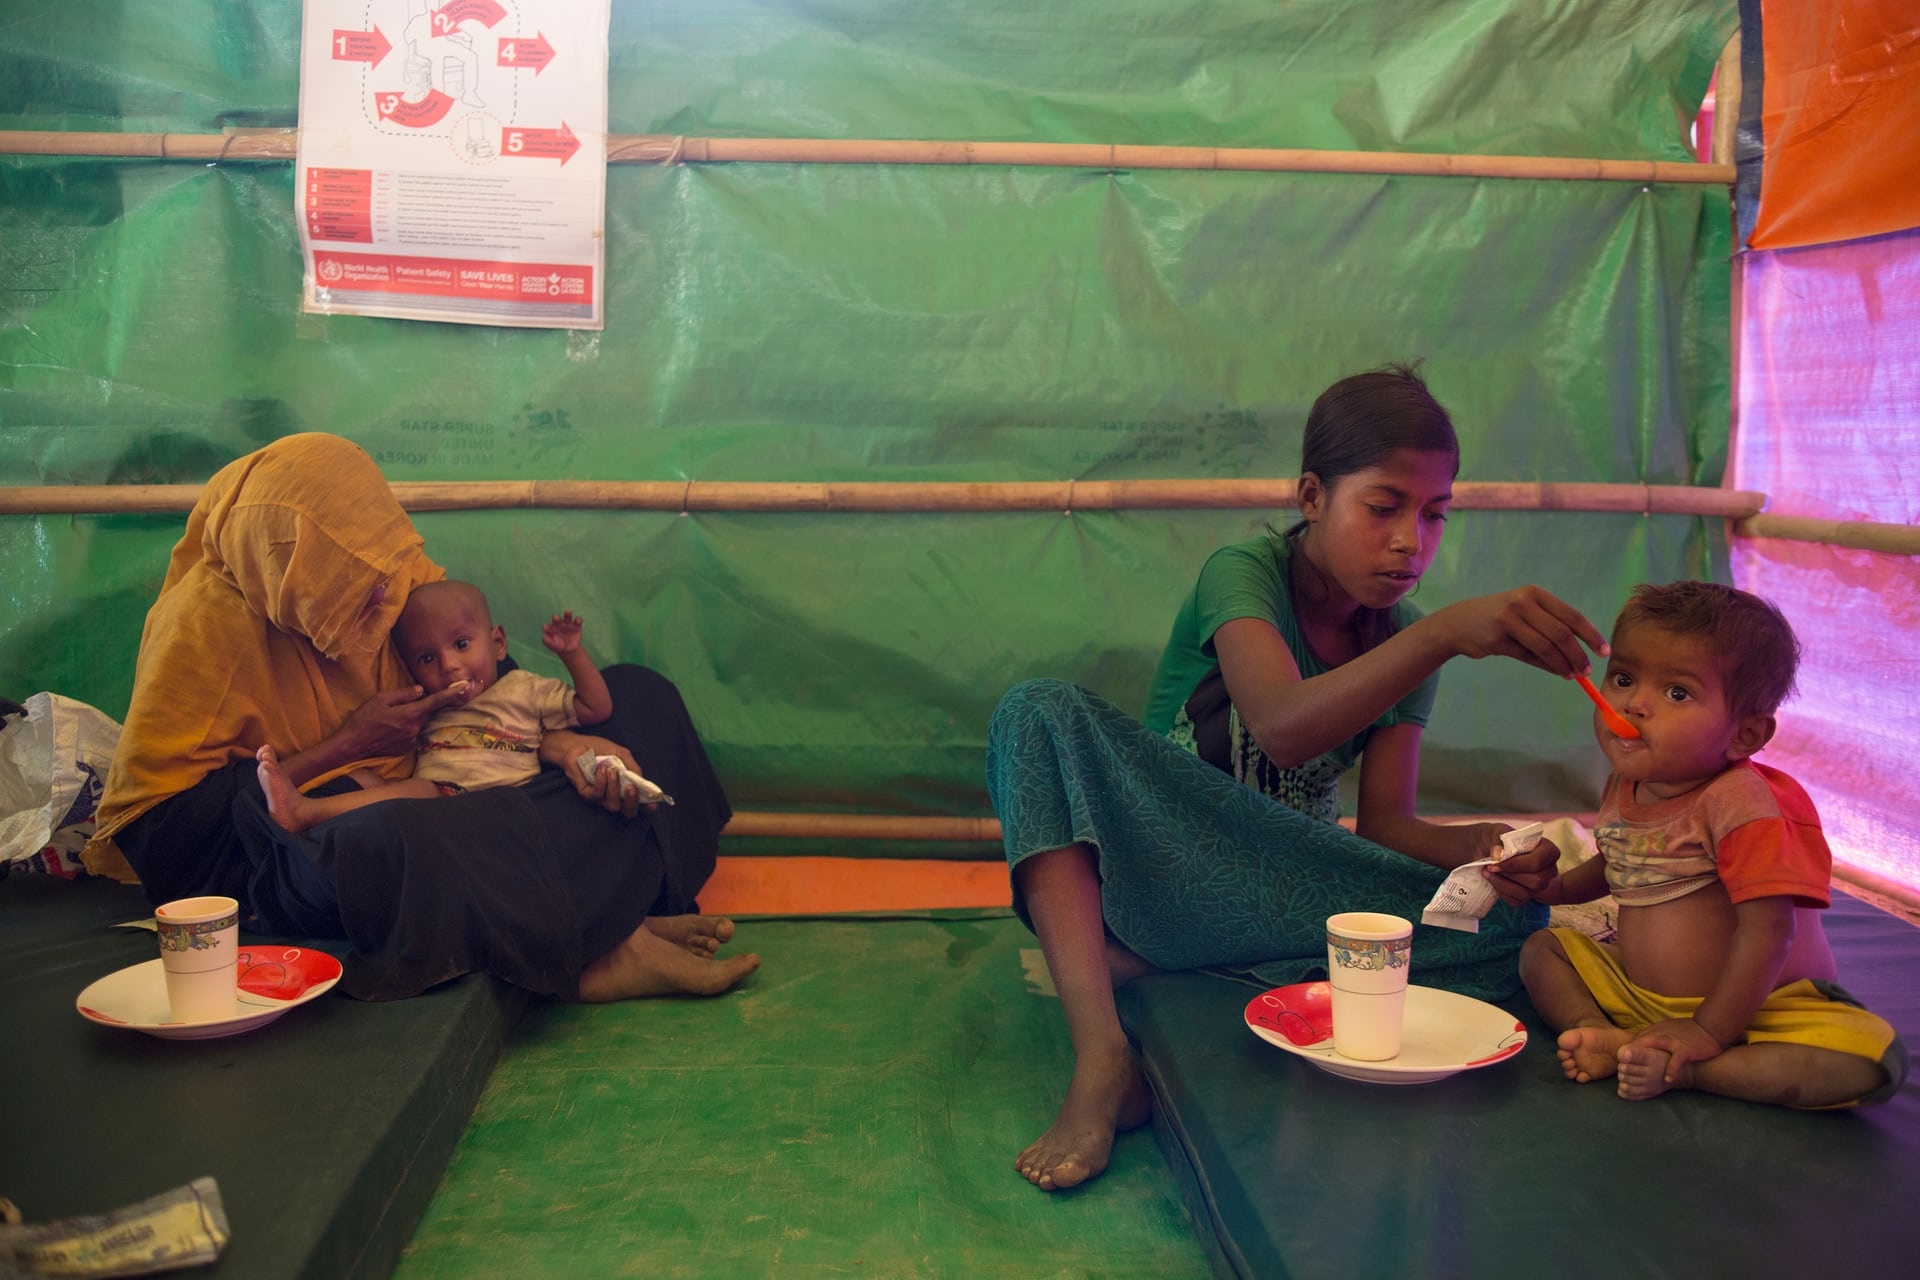 تصاویر | وضعیت نامناسب پناهجویان میانماری در بنگلادش